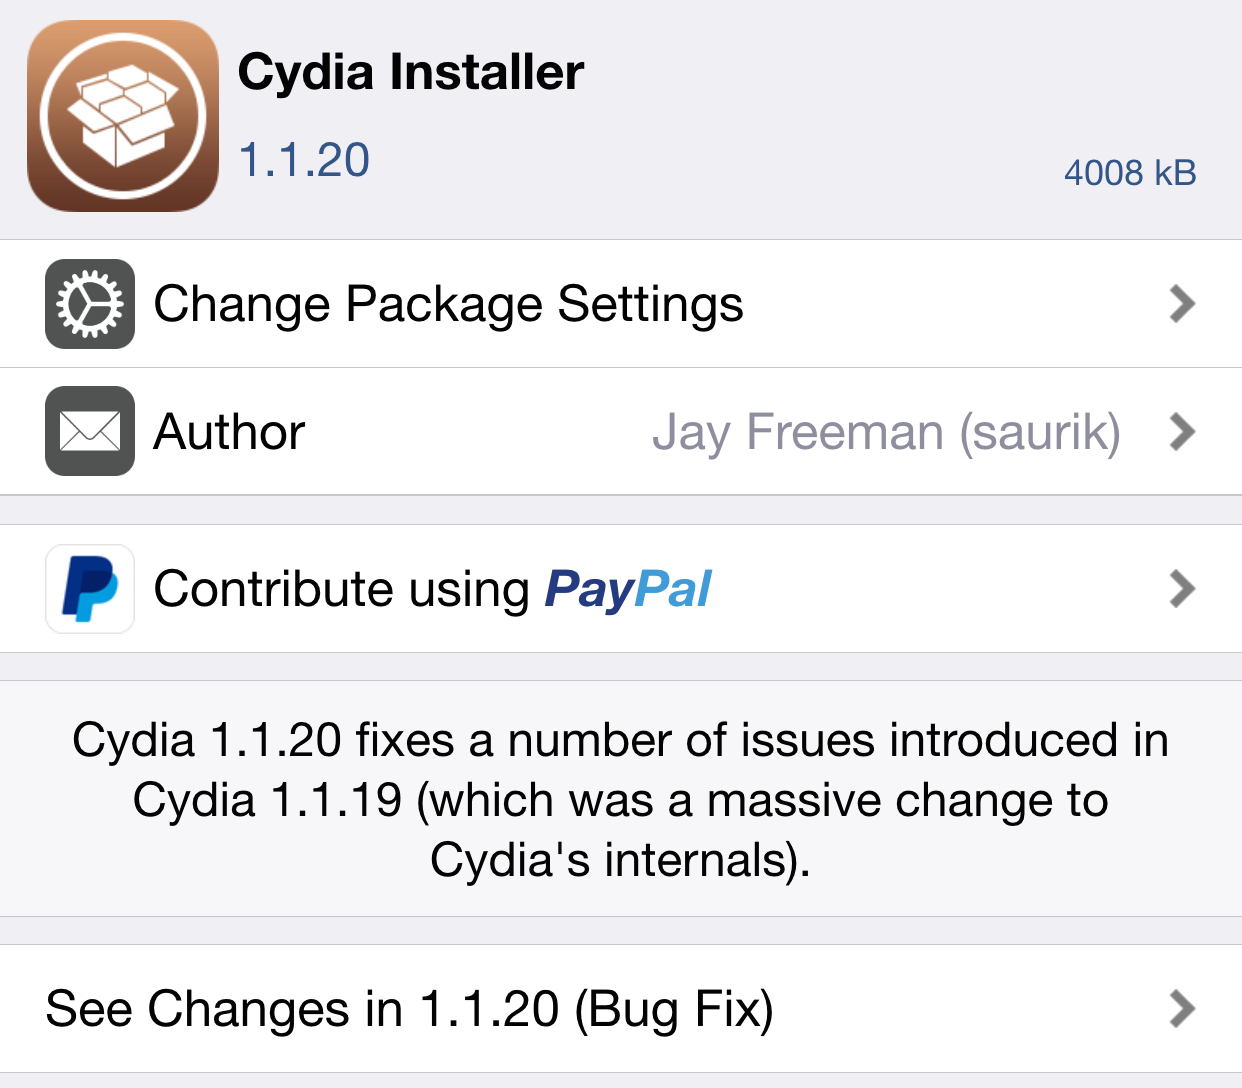 Cydia Installer 1.1.20